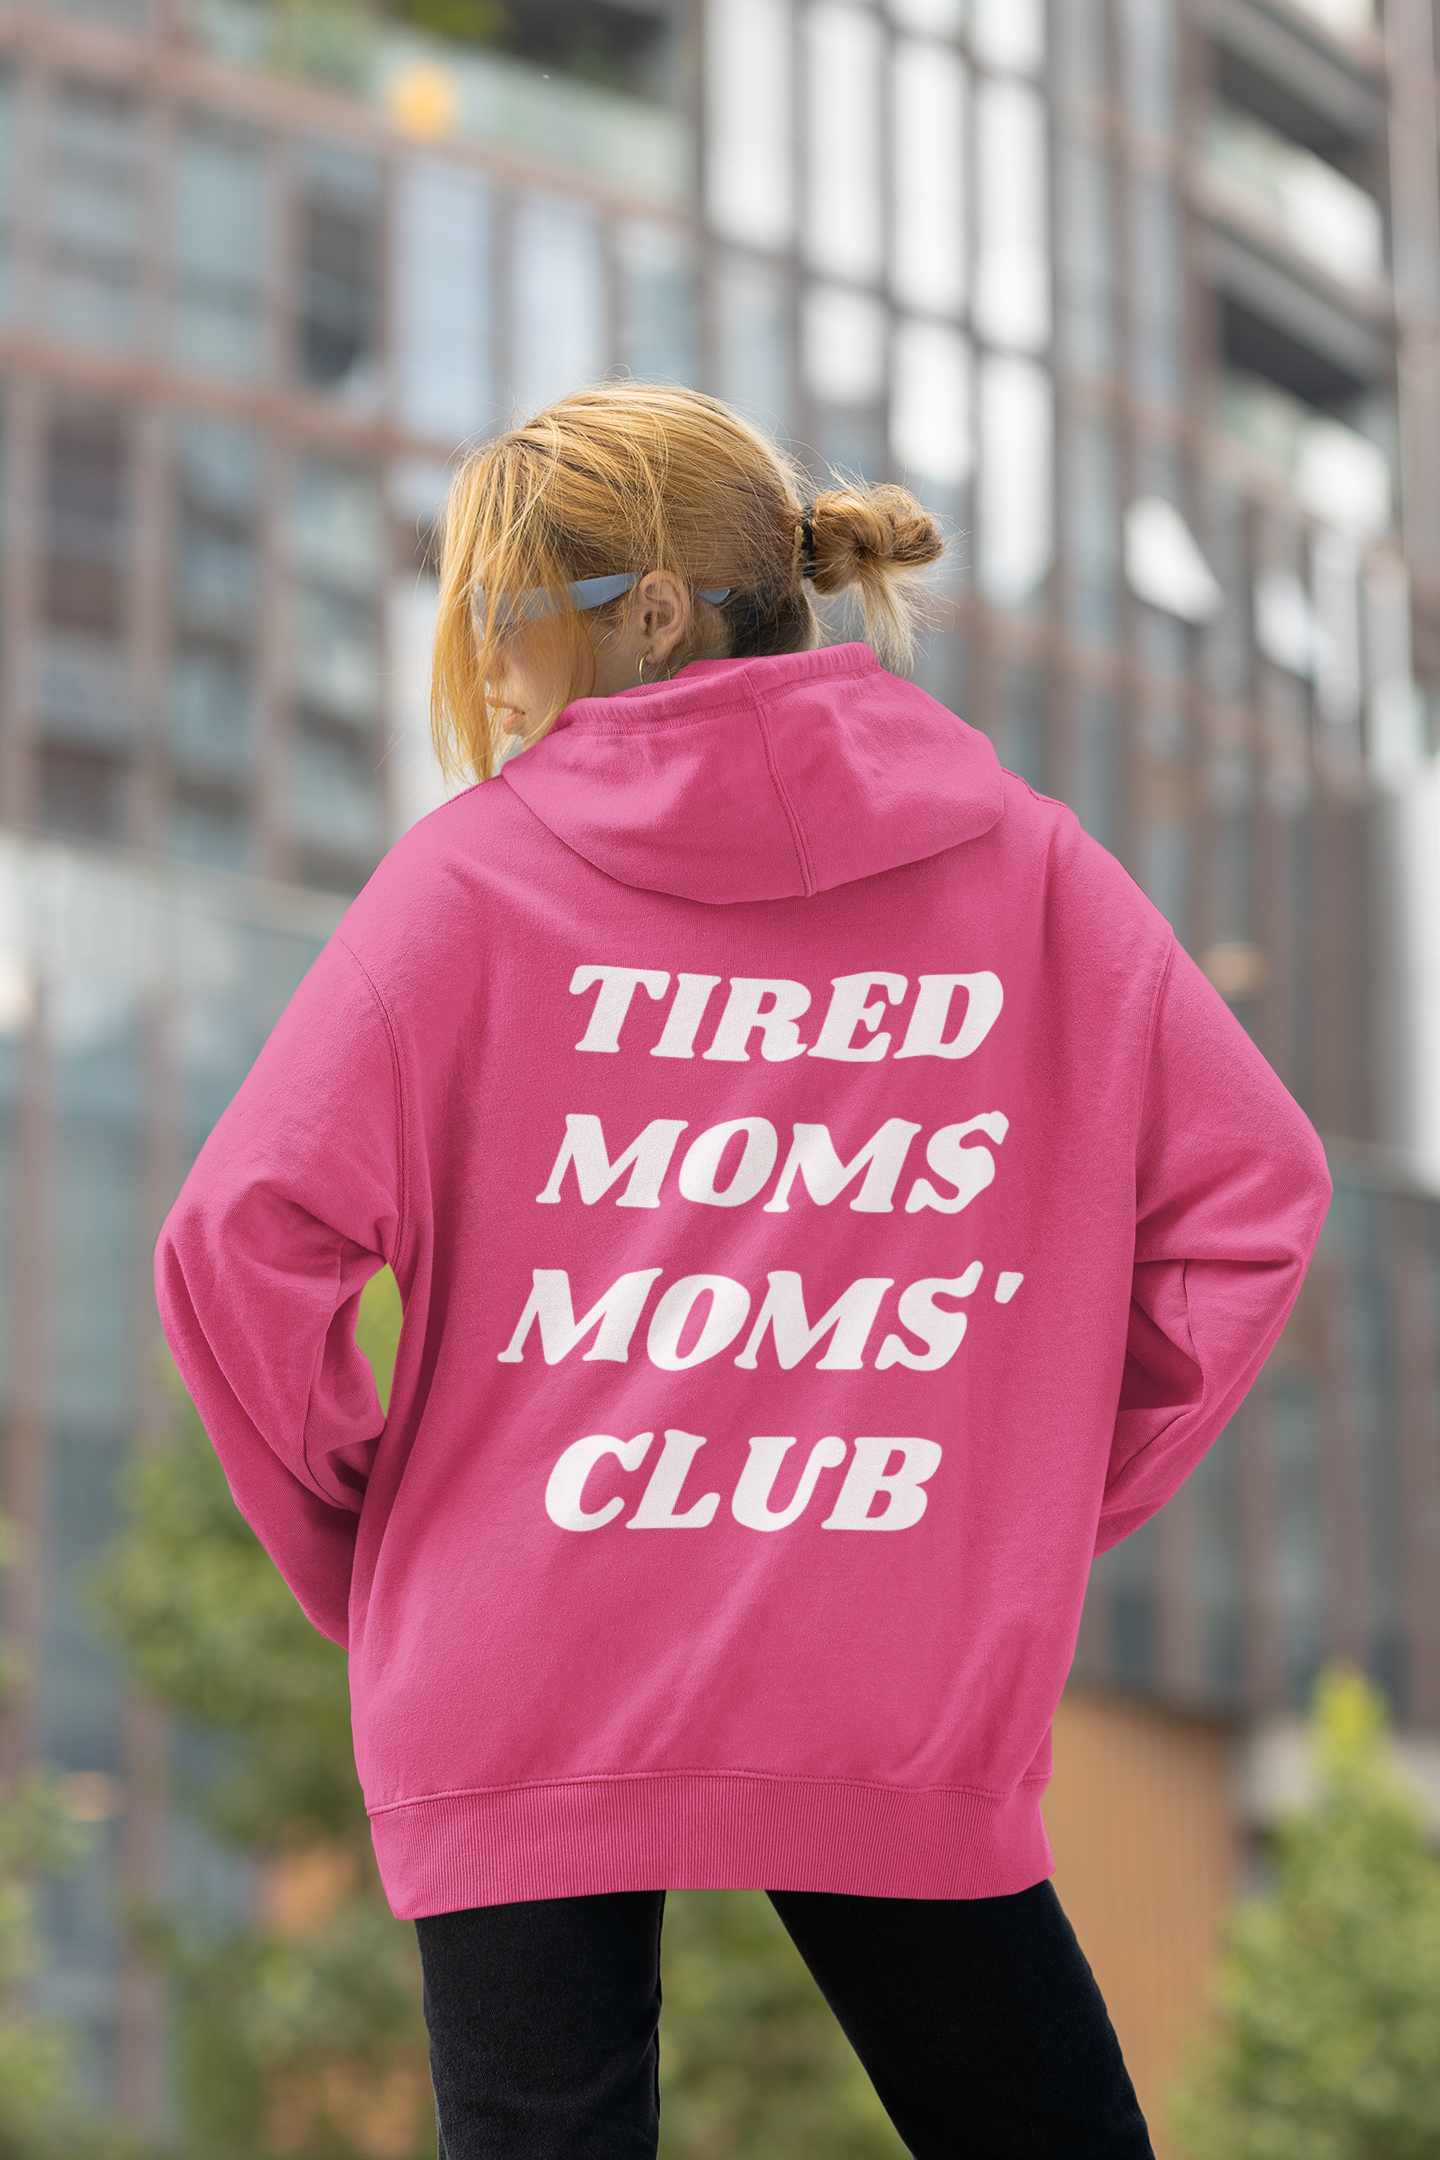 Tired Moms Moms' Club Hoodie